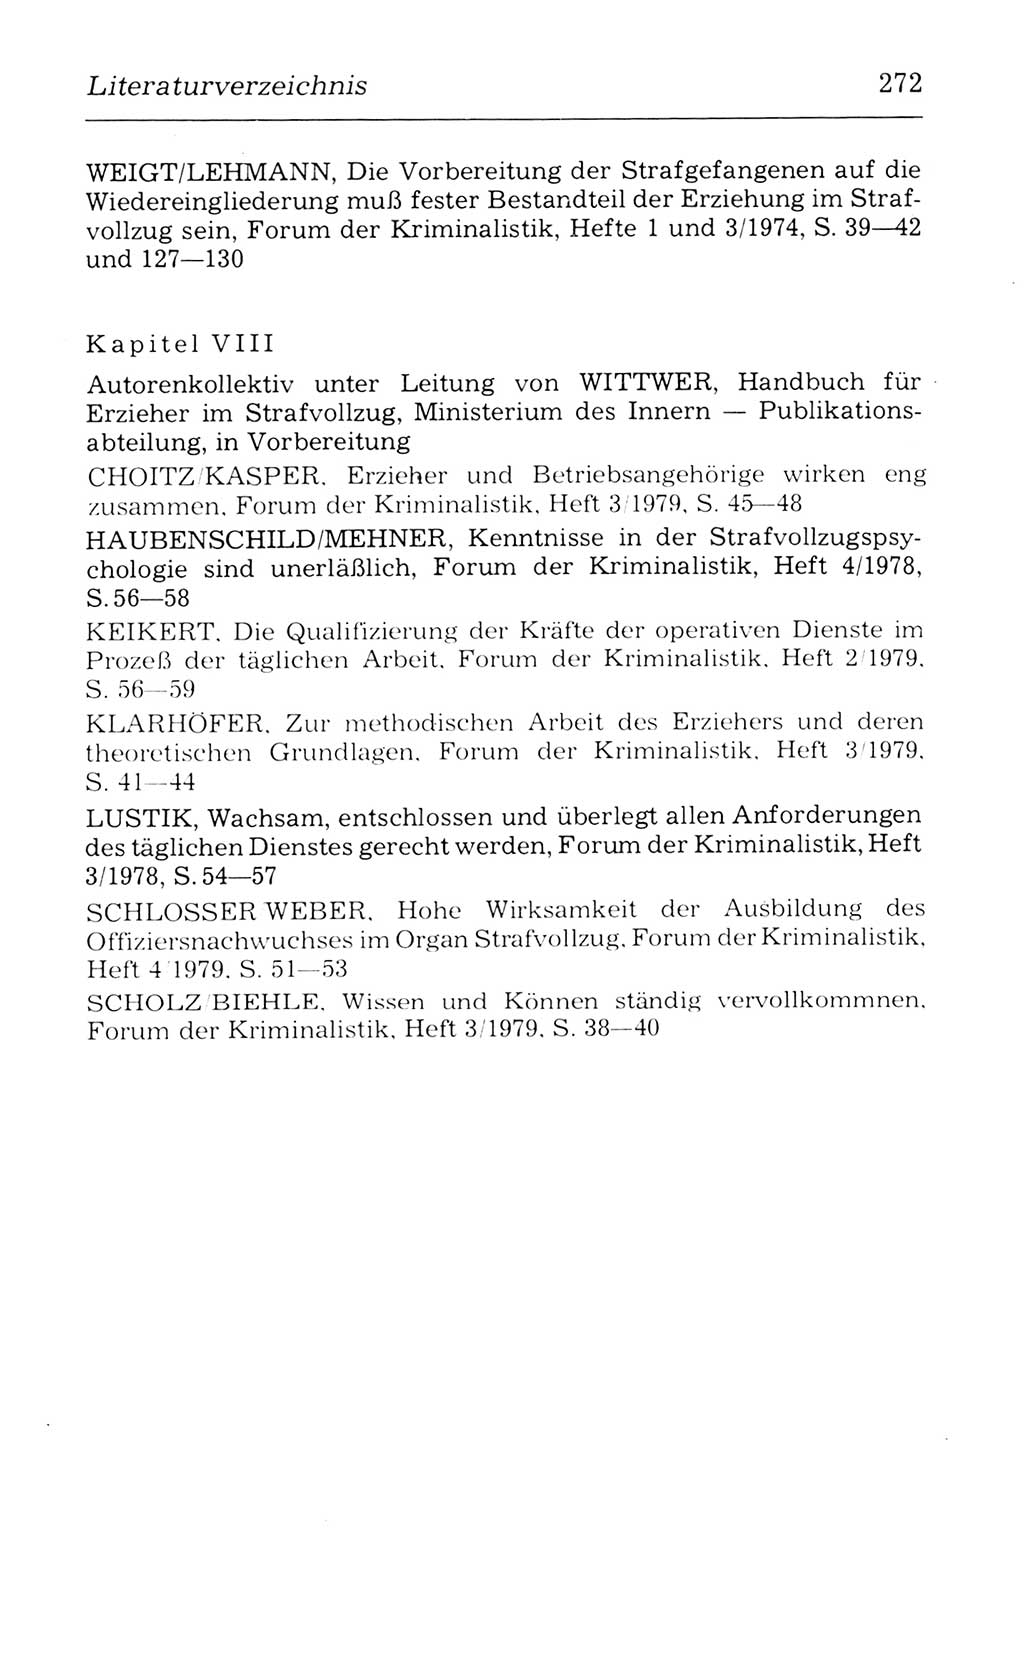 Kommentar zum Strafvollzugsgesetz [(StVG) Deutsche Demokratische Republik (DDR)] 1980, Seite 272 (Komm. StVG DDR 1980, S. 272)